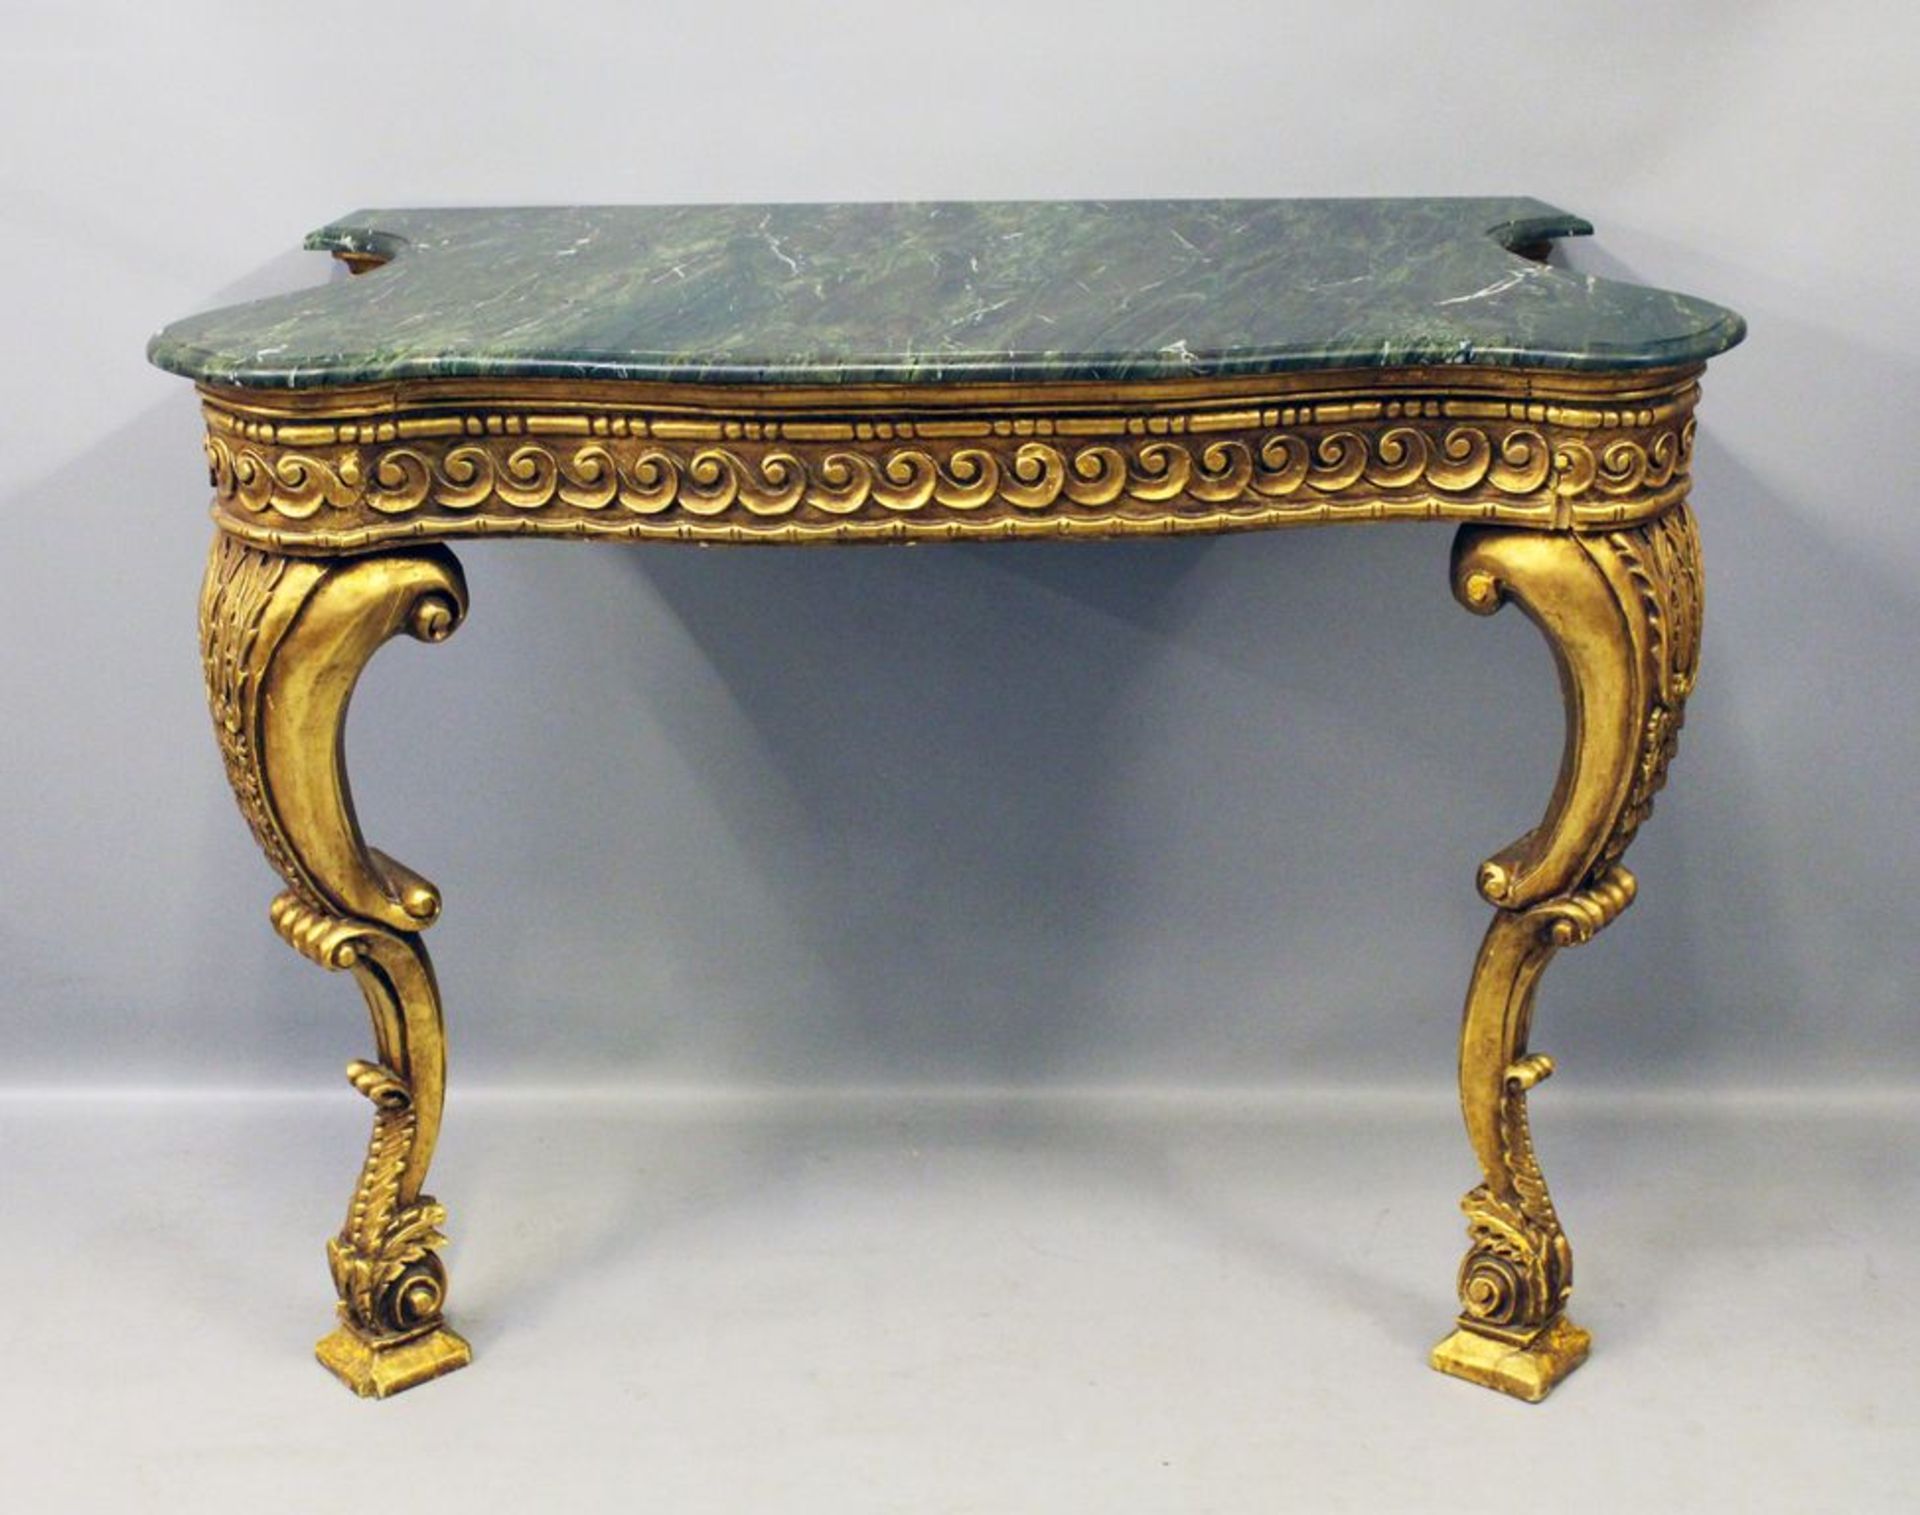 Prunkkonsole im Stil Louis XV. Holz, vergoldet. Geschnitzte Zierornamente (teils best., bzw. 1